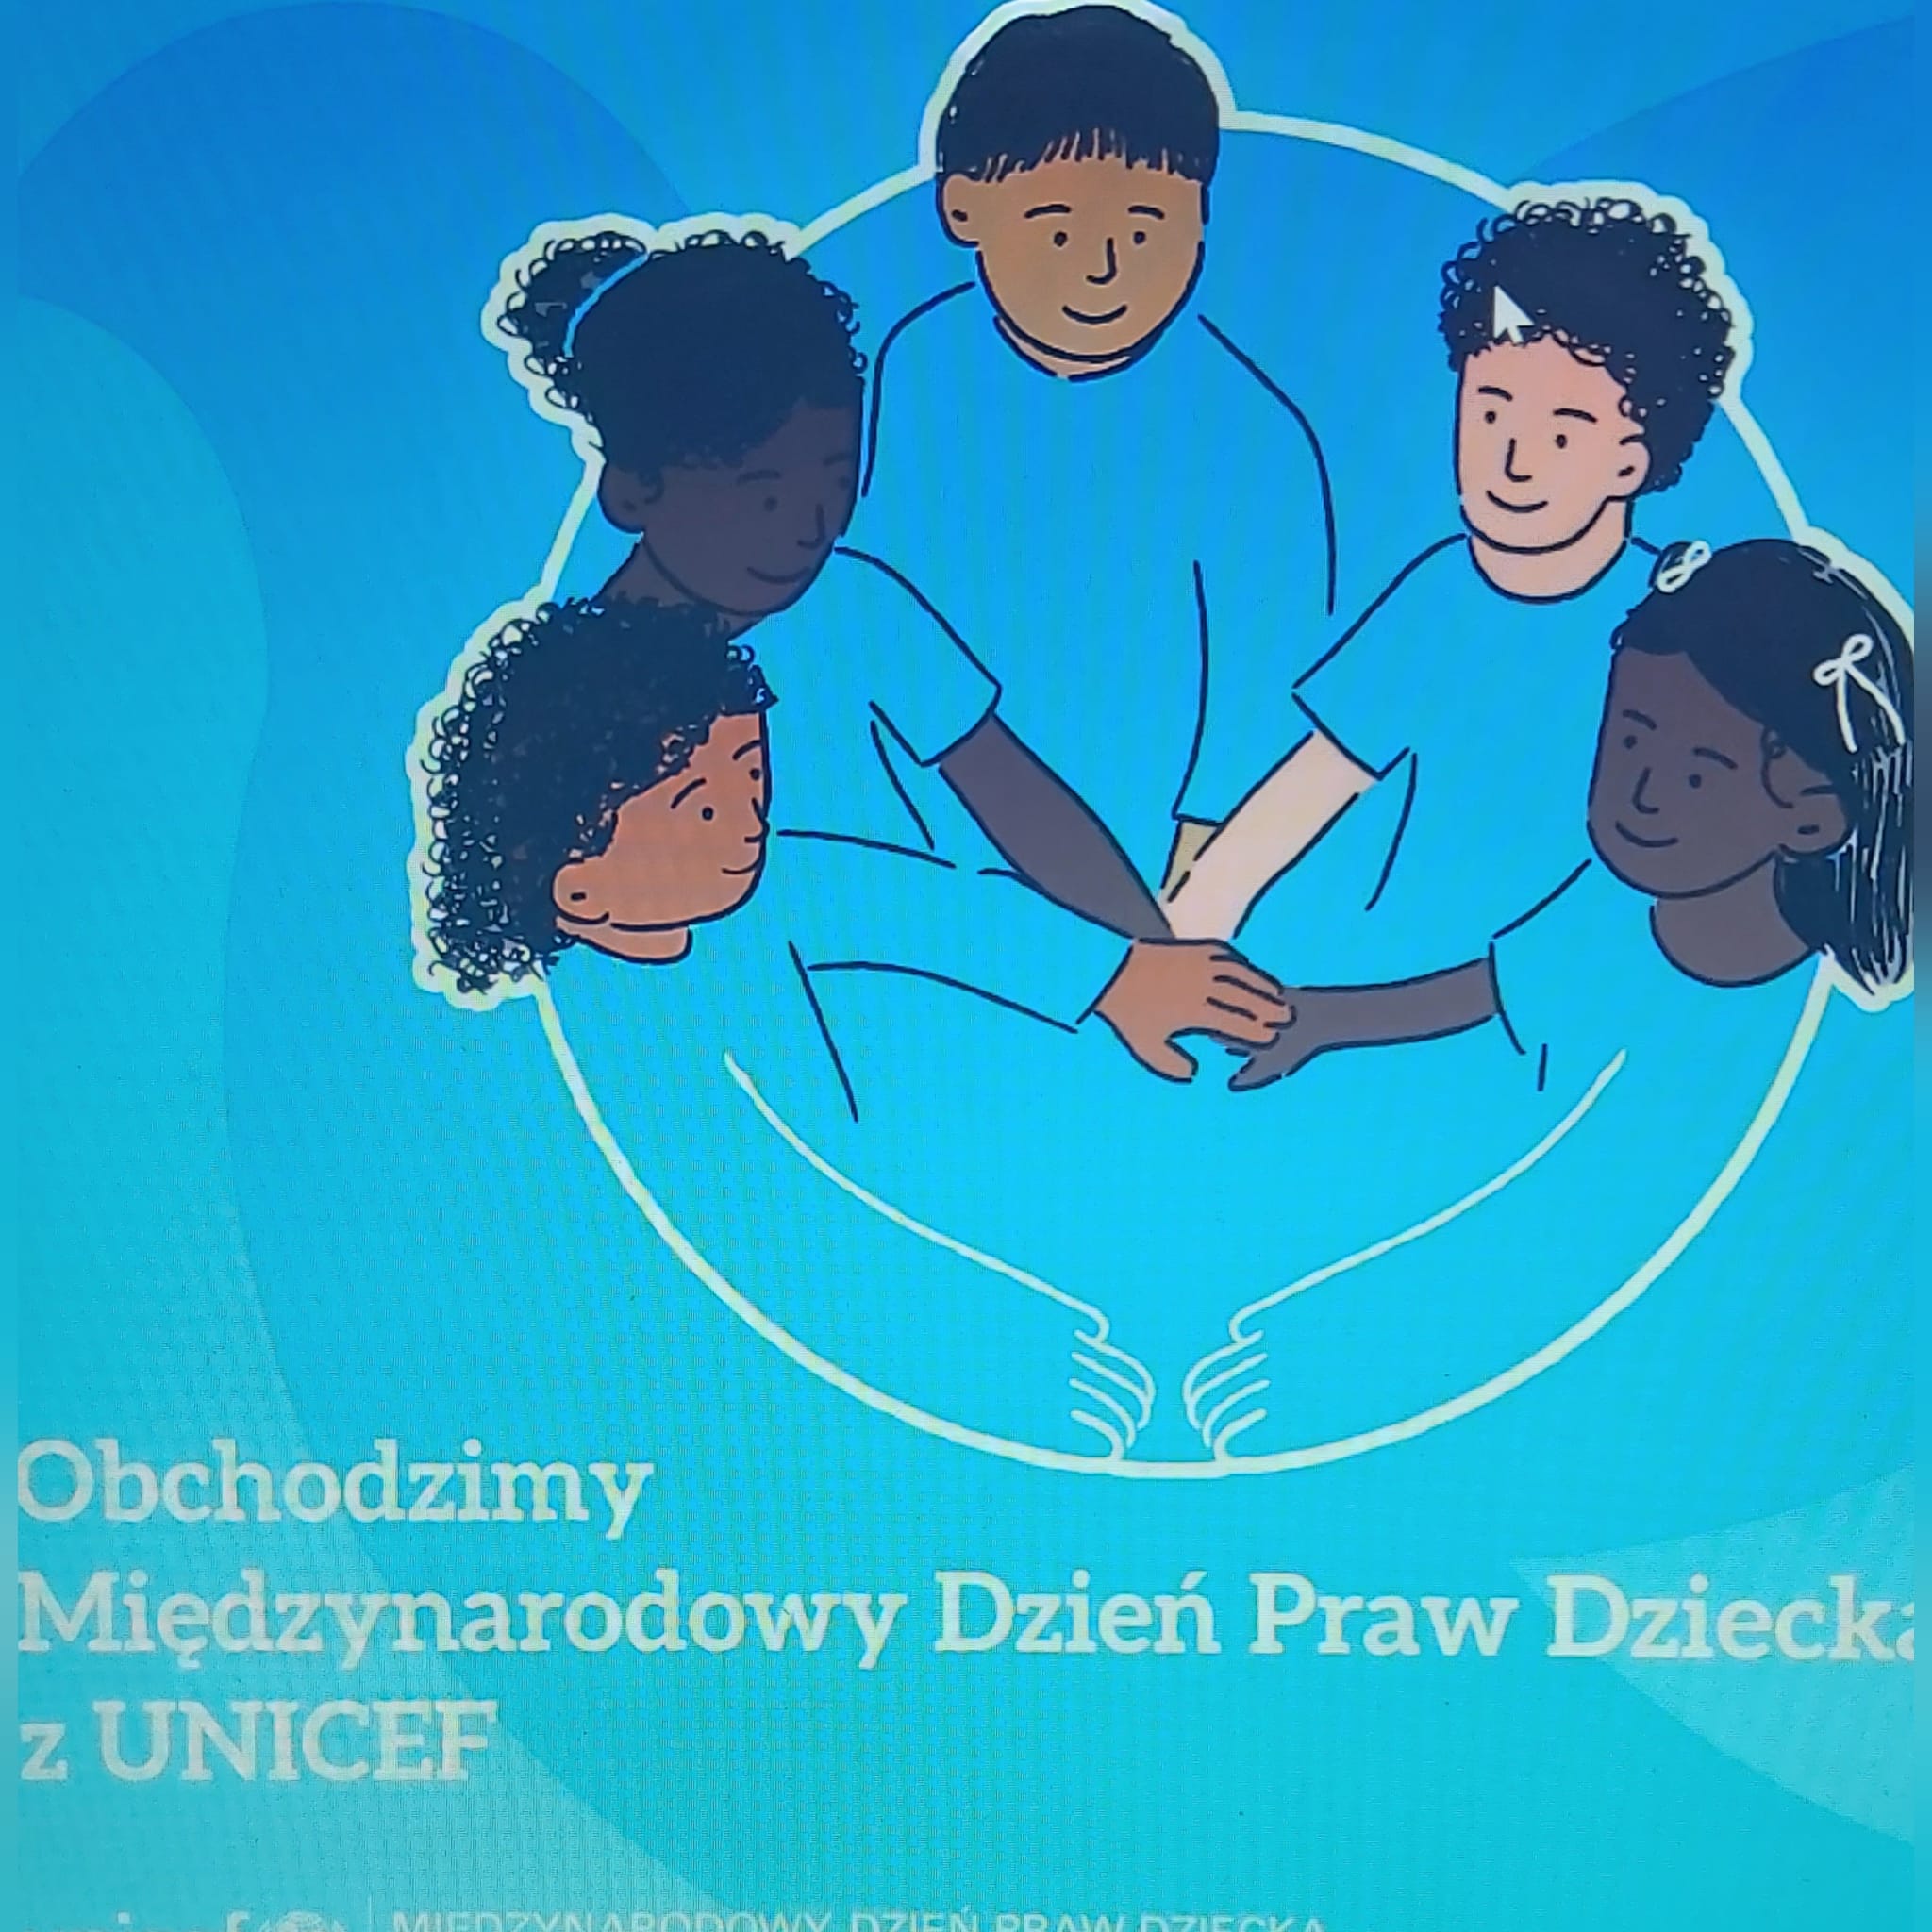 plakat prawa dziecka Unicef